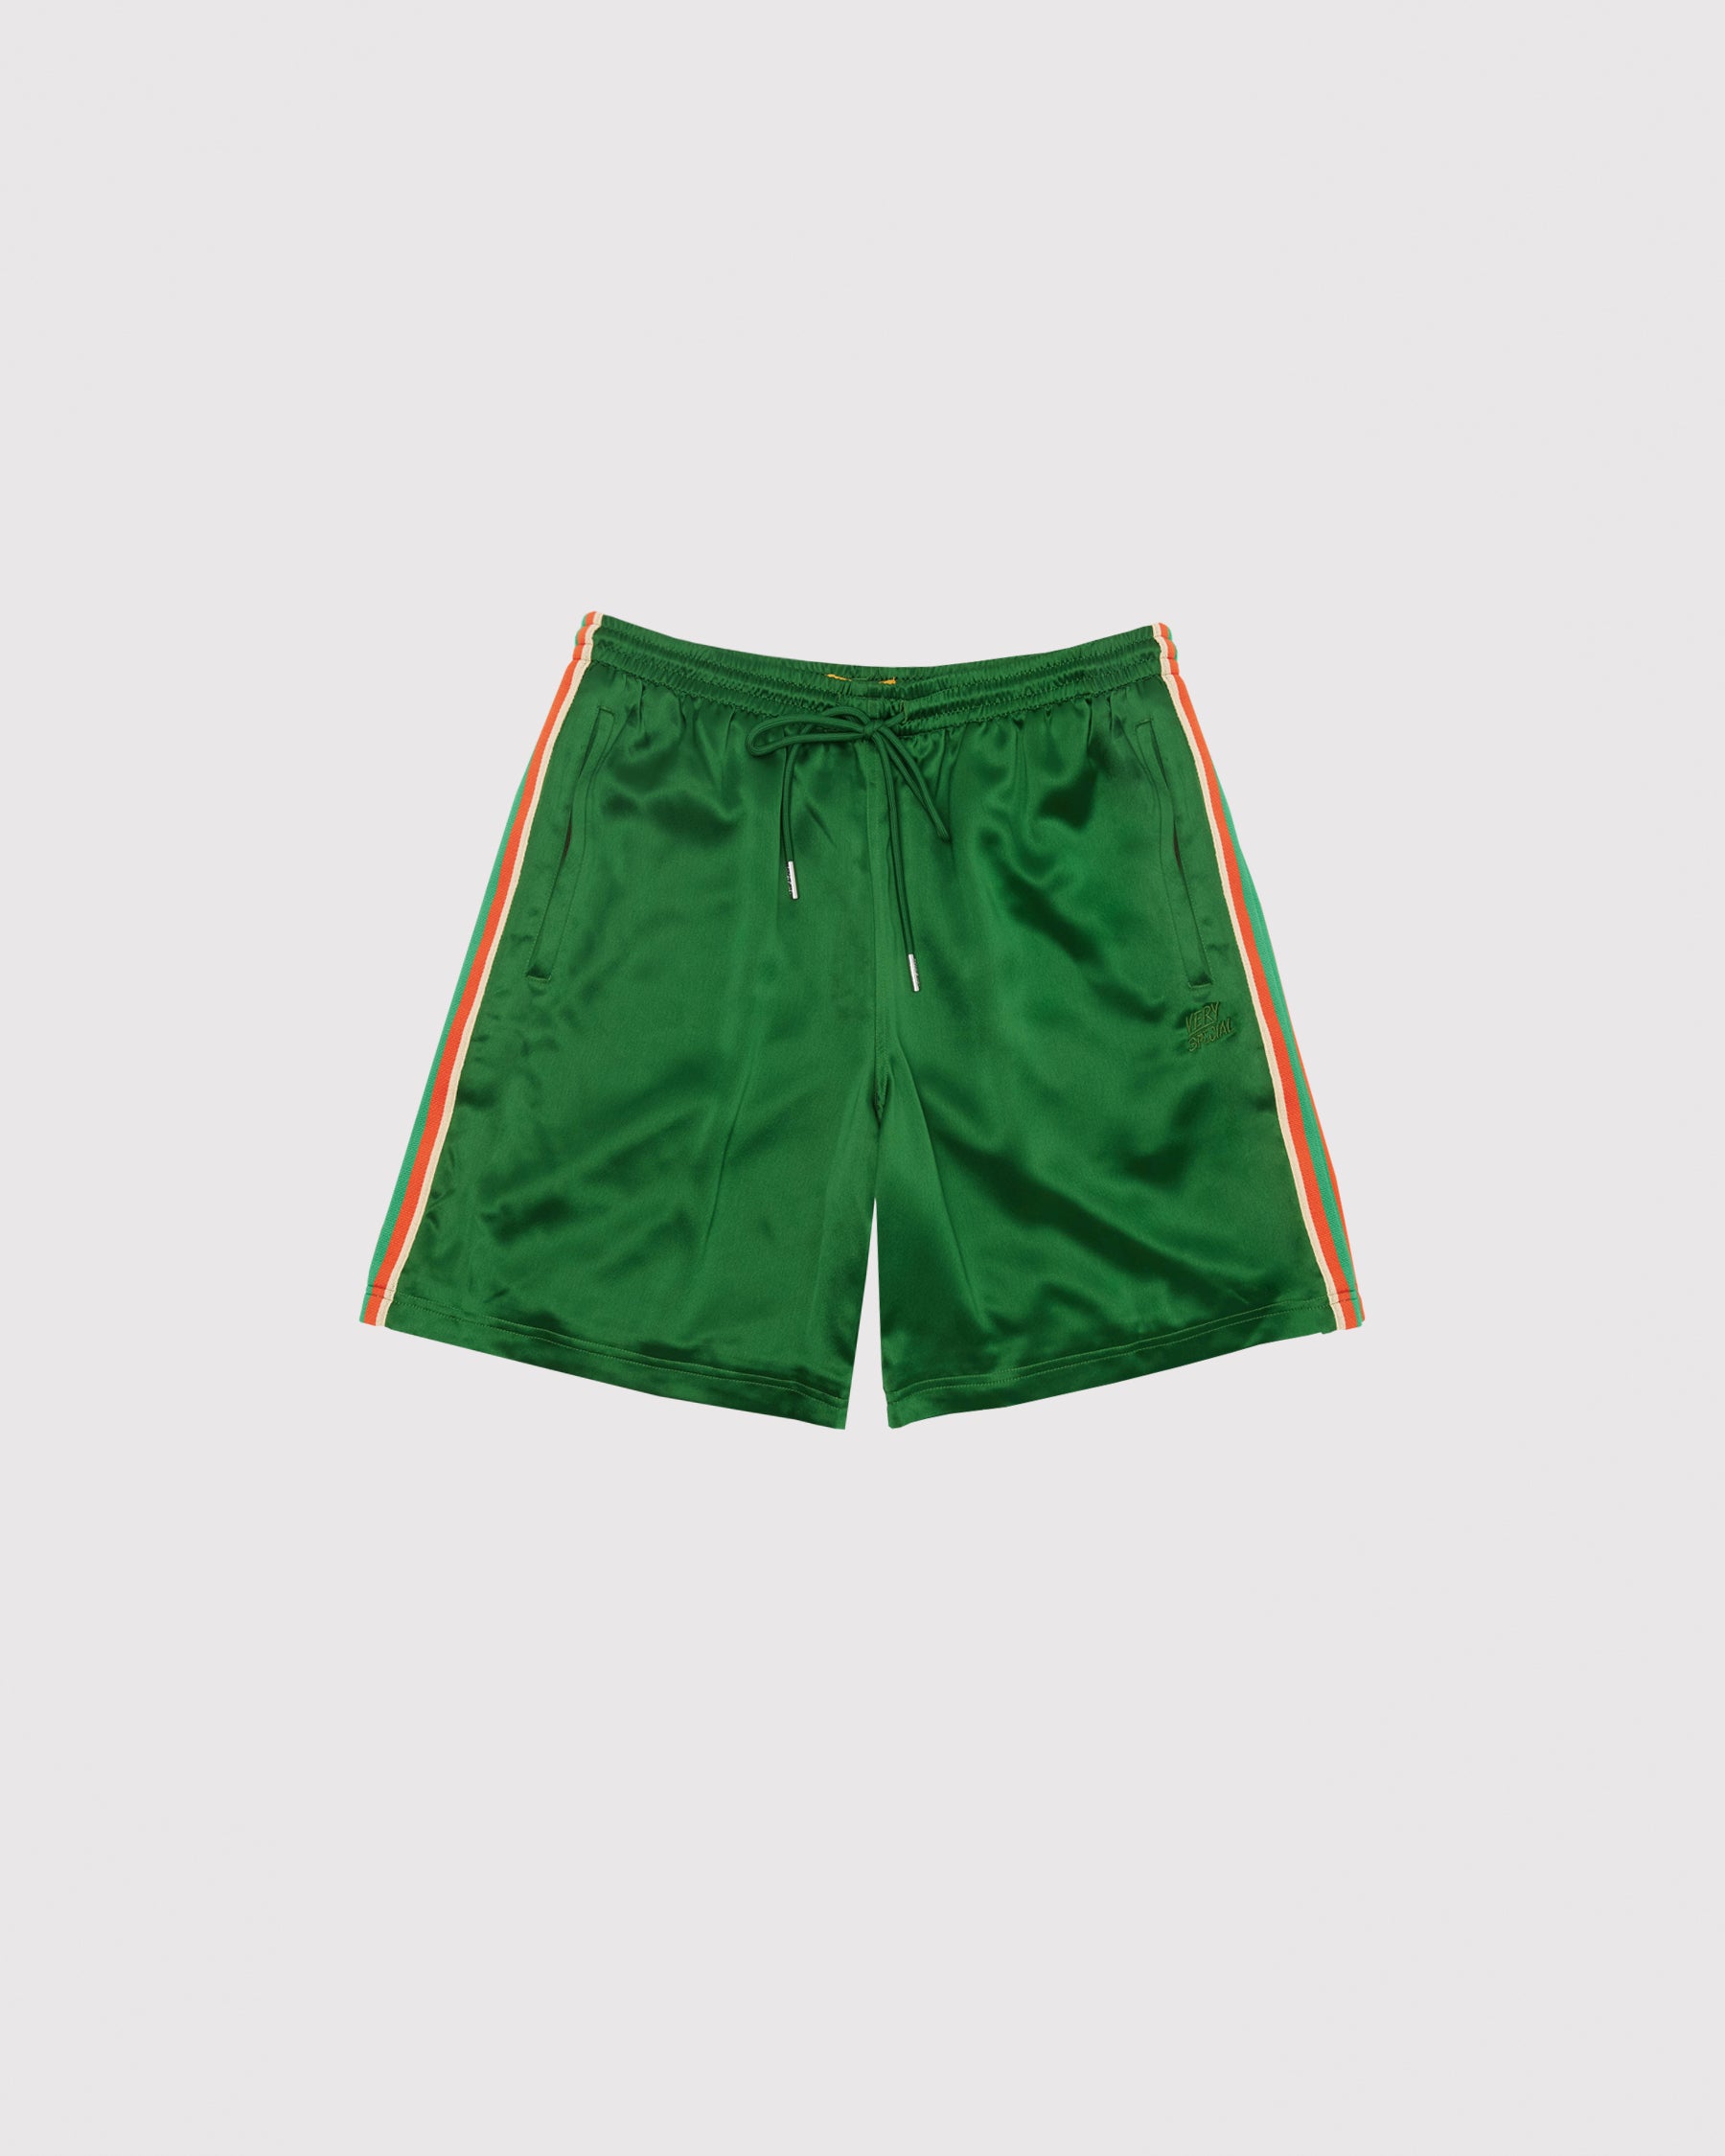 Green Satin "Stripe" Basketball shorts